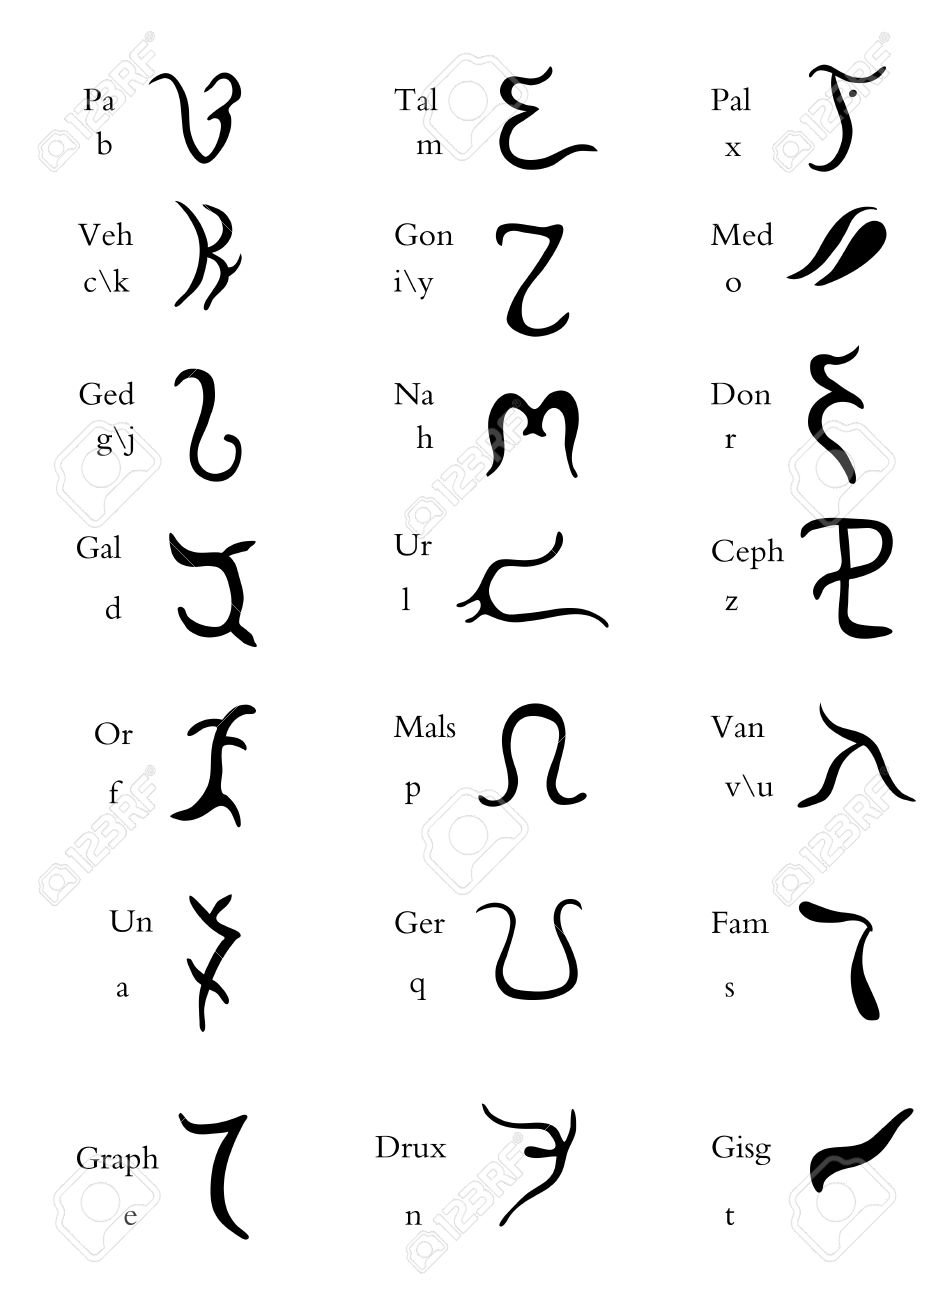 L'enochien est un très ancien langage Vibx